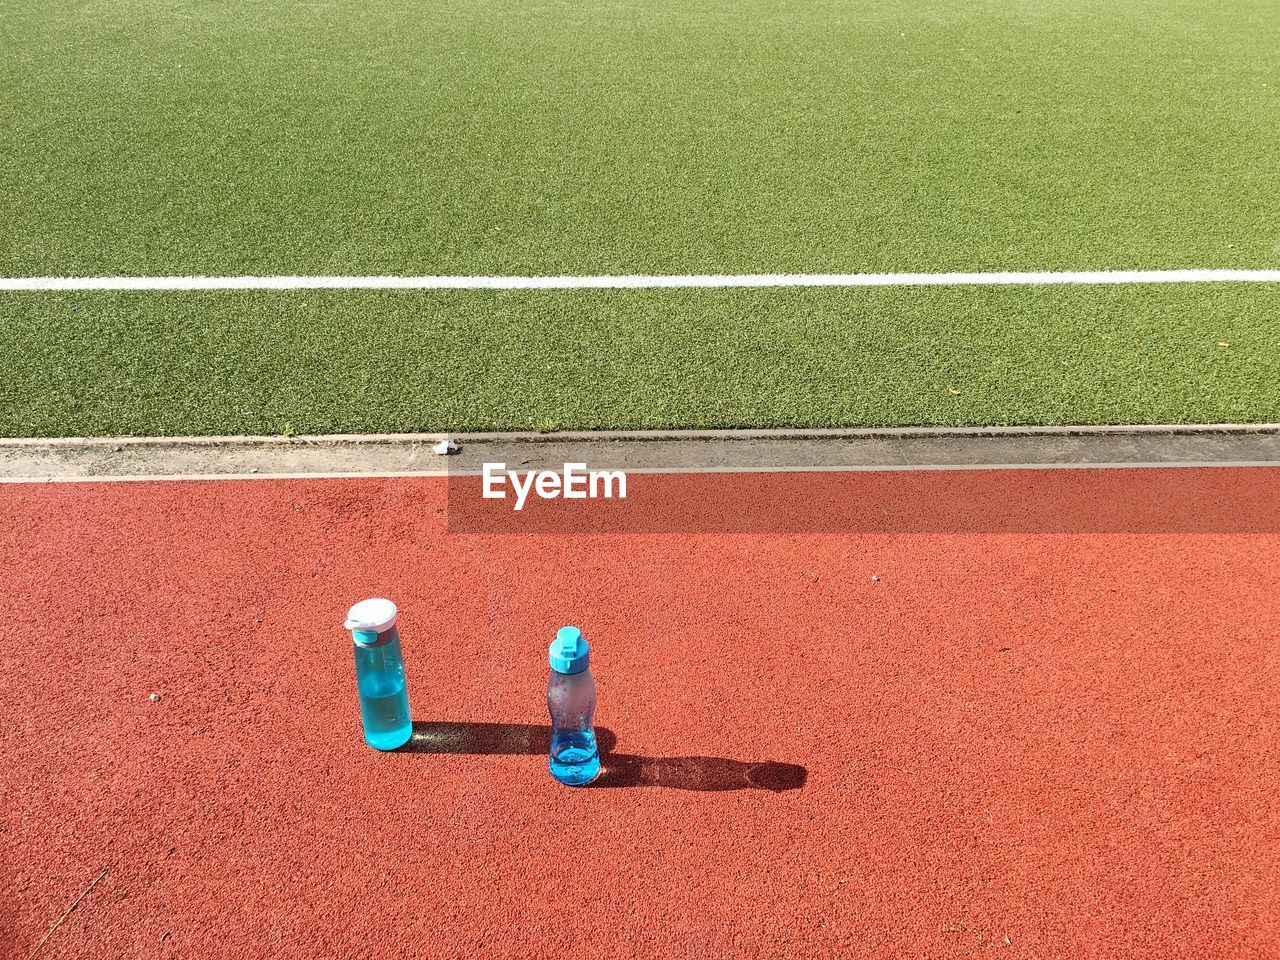 Water bottles on soccer field